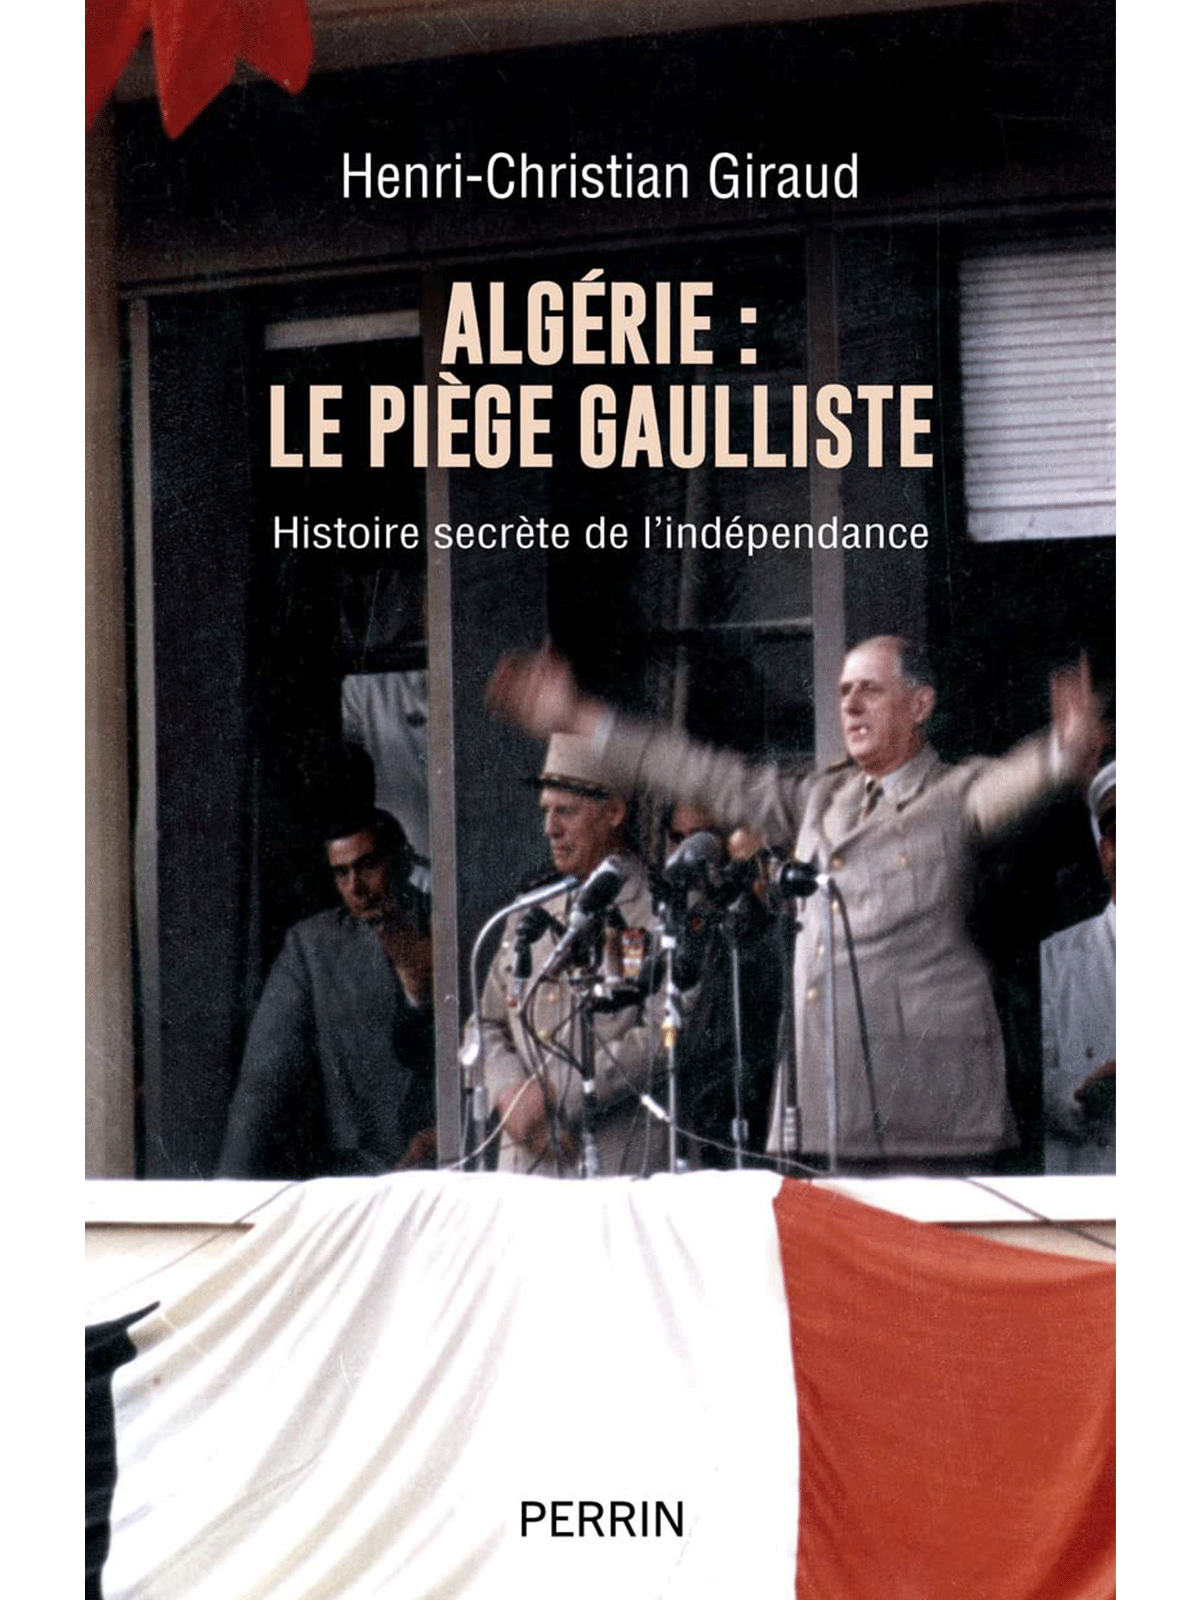 Henri-Christian Giraud : Algérie : Le piège gaulliste